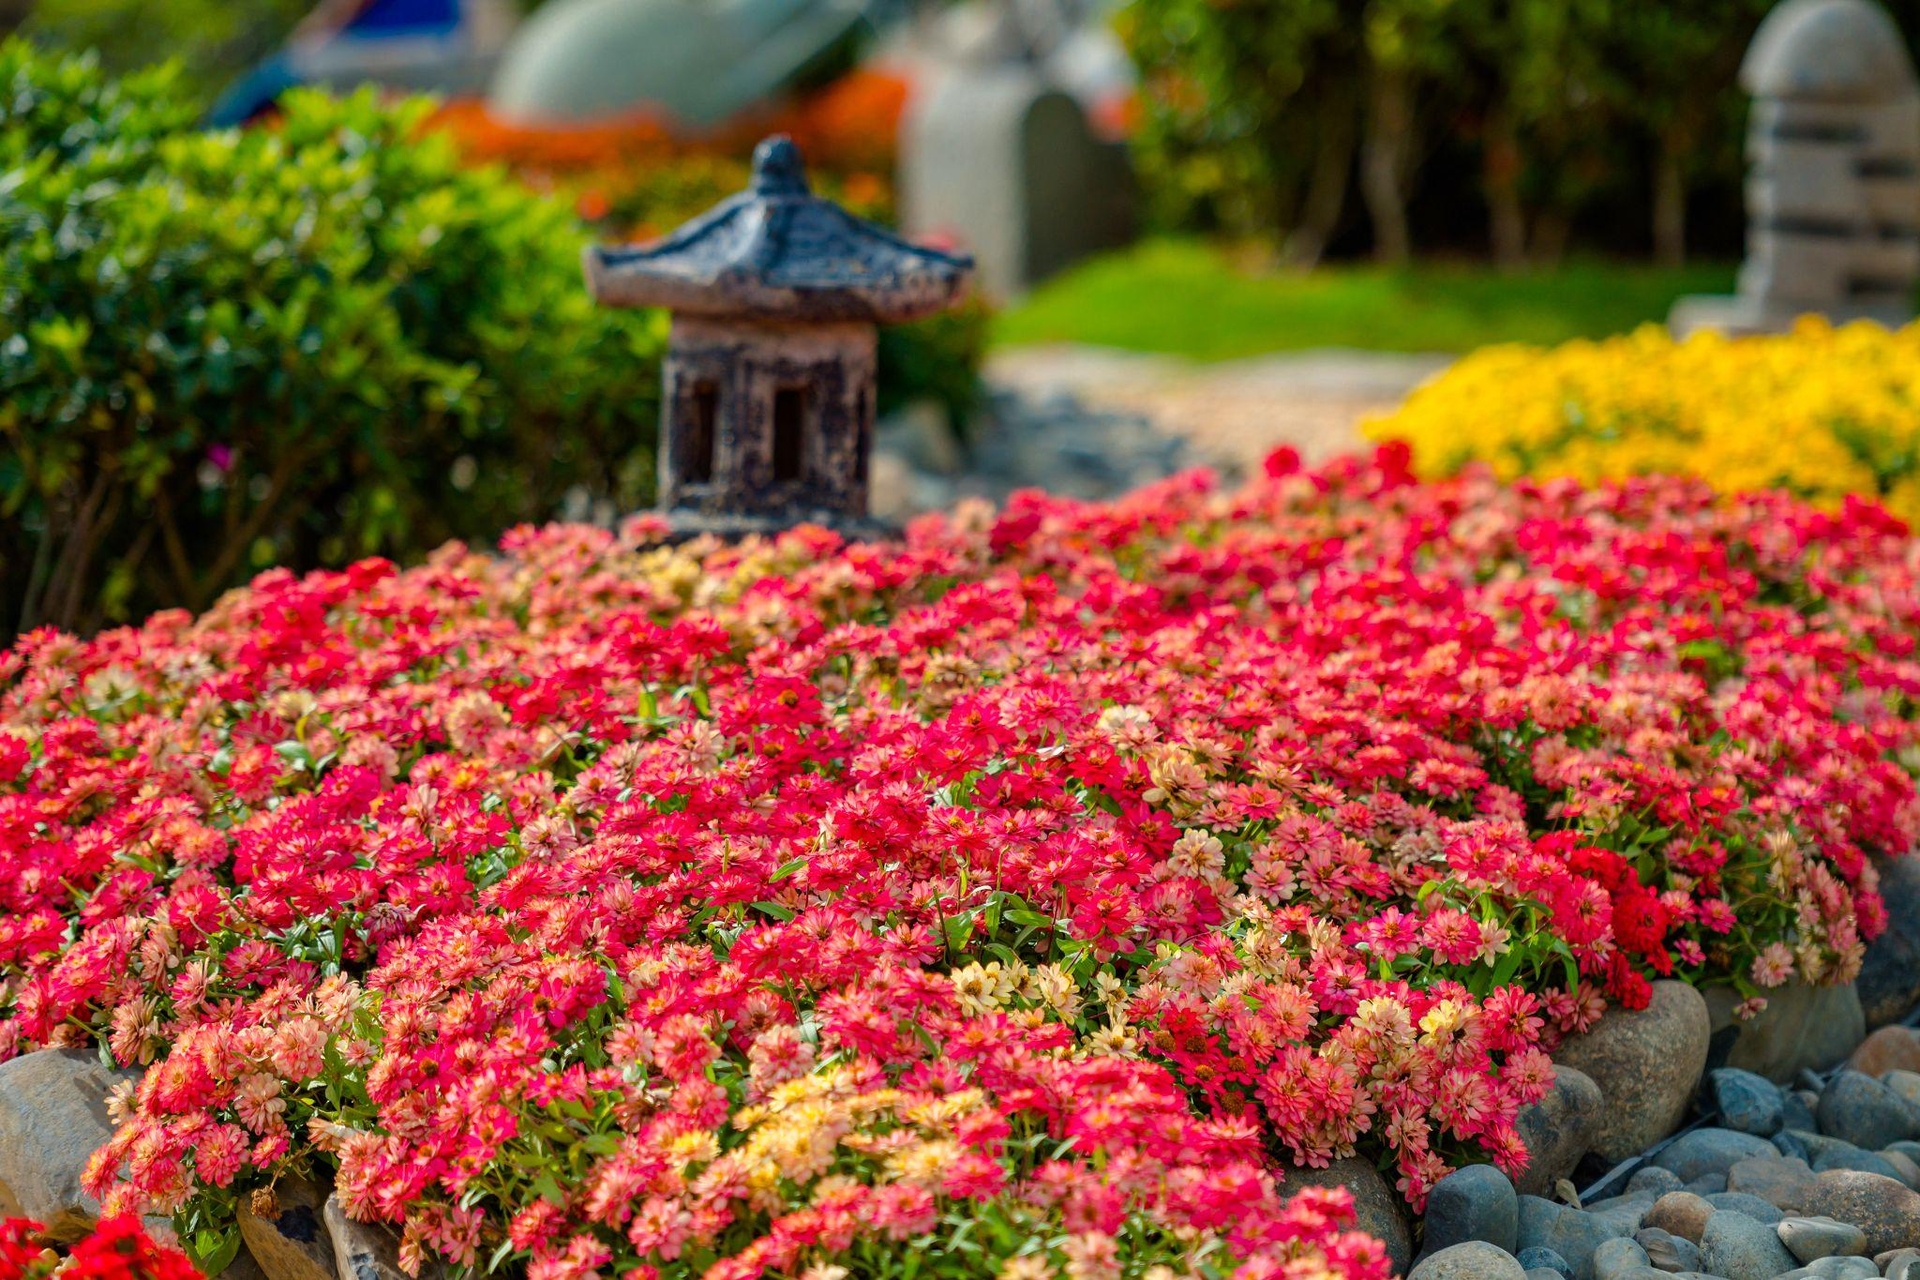 Trên đỉnh núi Bà Đen hiện có hơn 100 loại cây, hoa kiểng luôn nở rực rỡ suốt bốn mùa. Riêng các đợt lễ tết, có đến hơn 400.000 cây hoa kiểng được trưng bày, tạo nên cả một thiên đường hoa rực rỡ sắc màu. Ảnh: Sun World Ba Den Mountain.